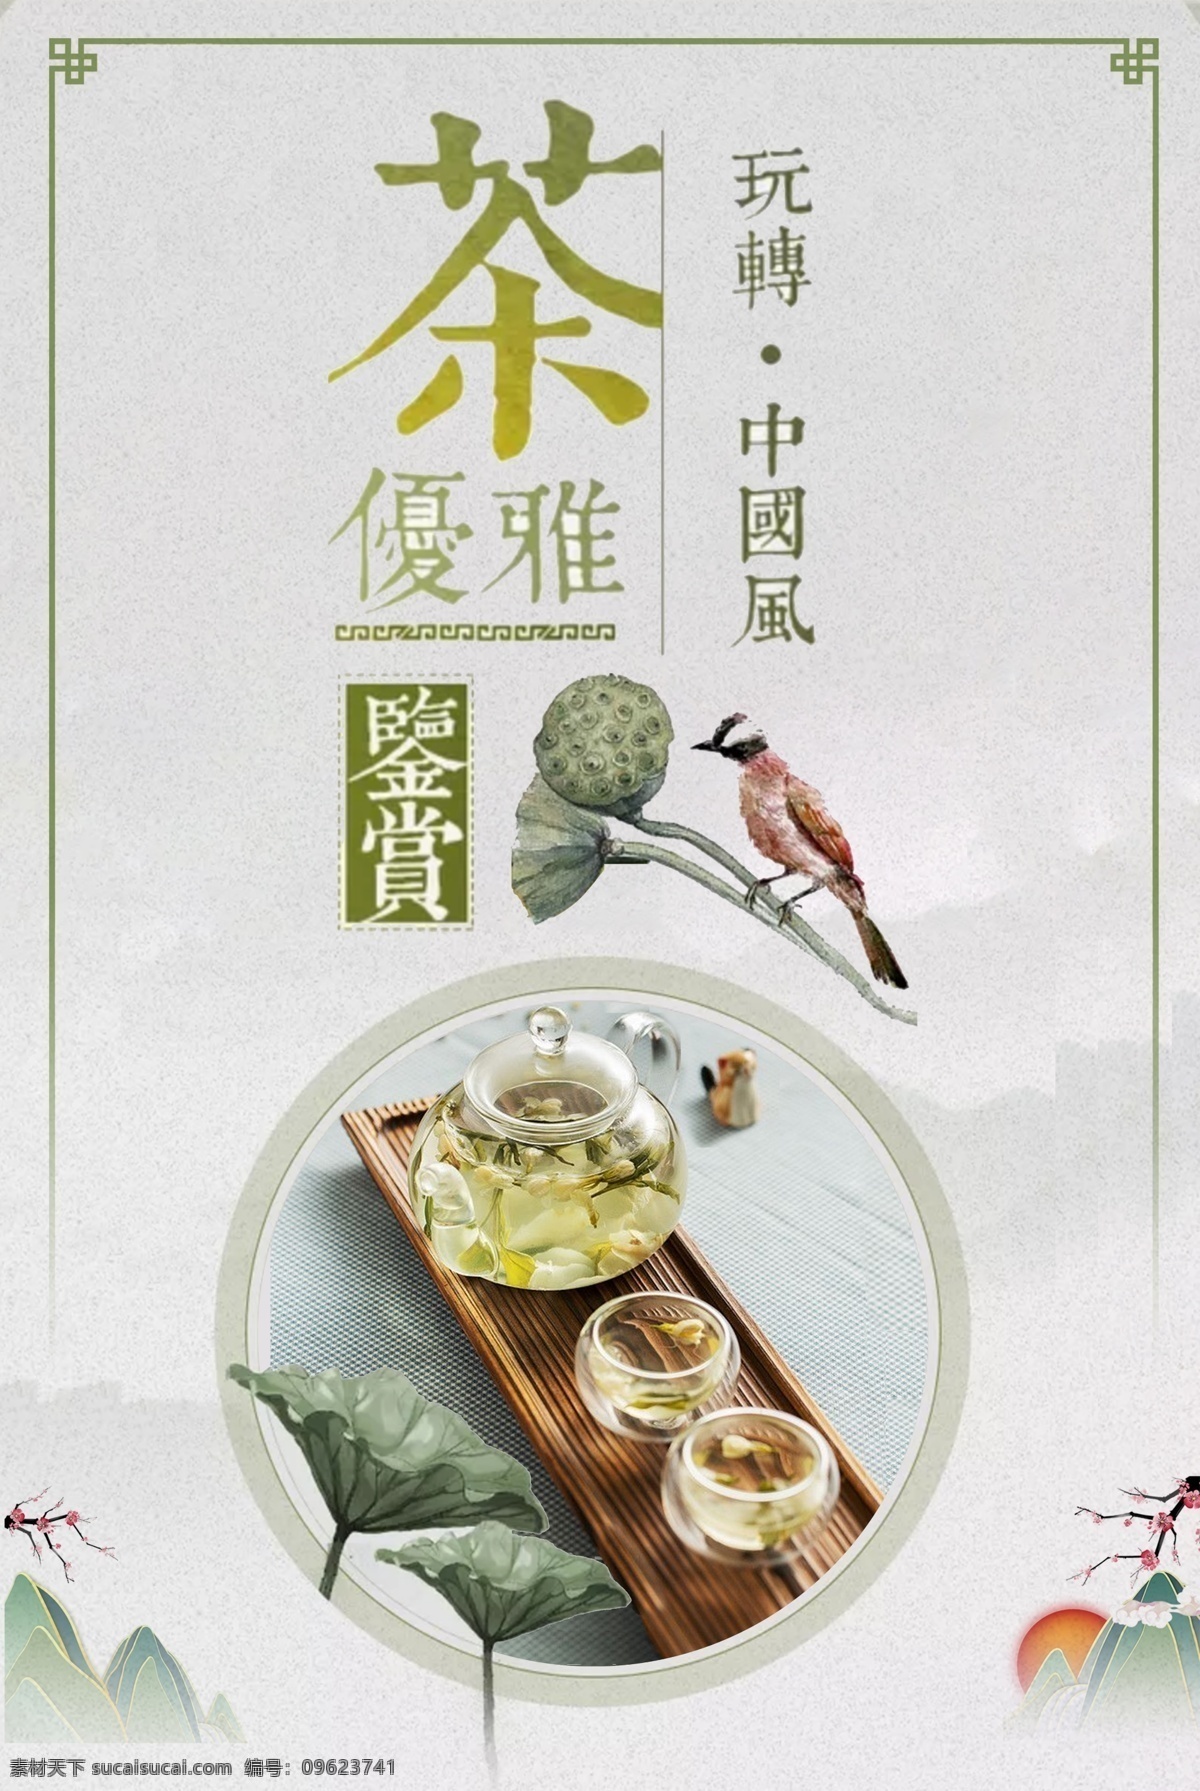 中国 风 花茶 海报 中国风 花茶海报 美食饮品 茶饮 促销 简洁 素雅 水墨